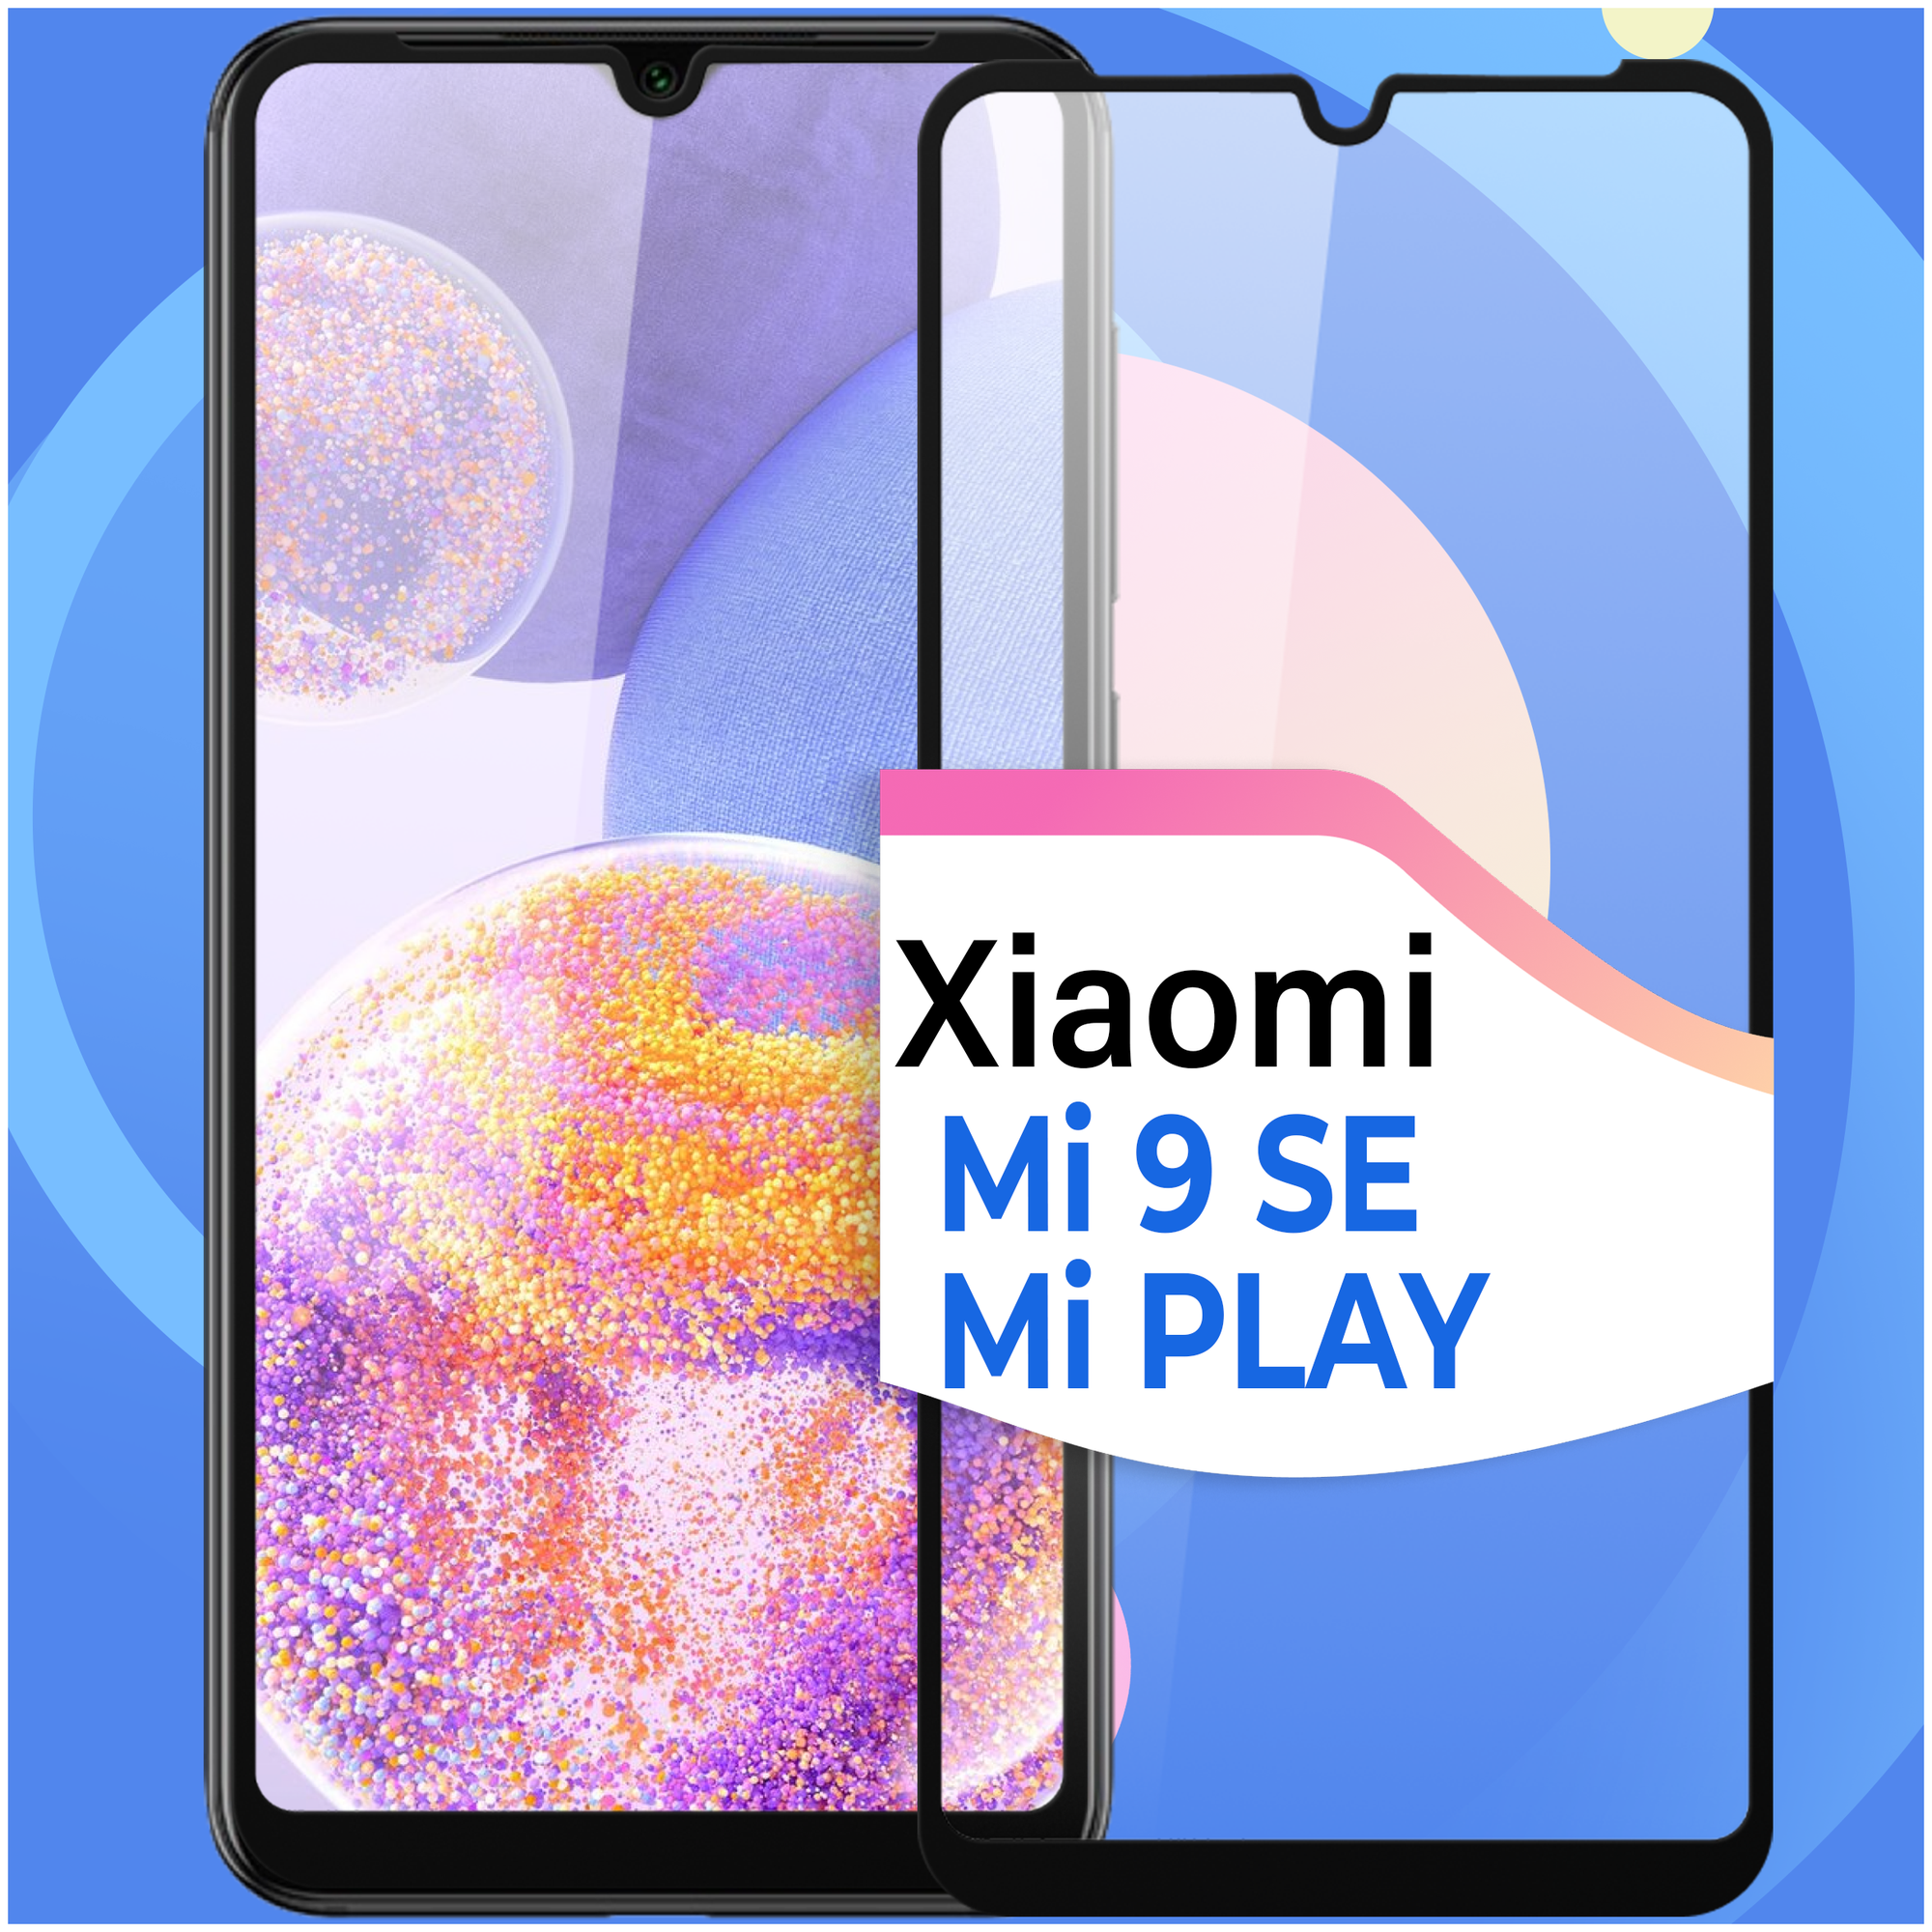 Защитное стекло на телефон Xiaomi Mi 9 SE и Mi Play / Противоударное олеофобное стекло для смартфона Сяоми Ми 9 СЕ и Ми Плей